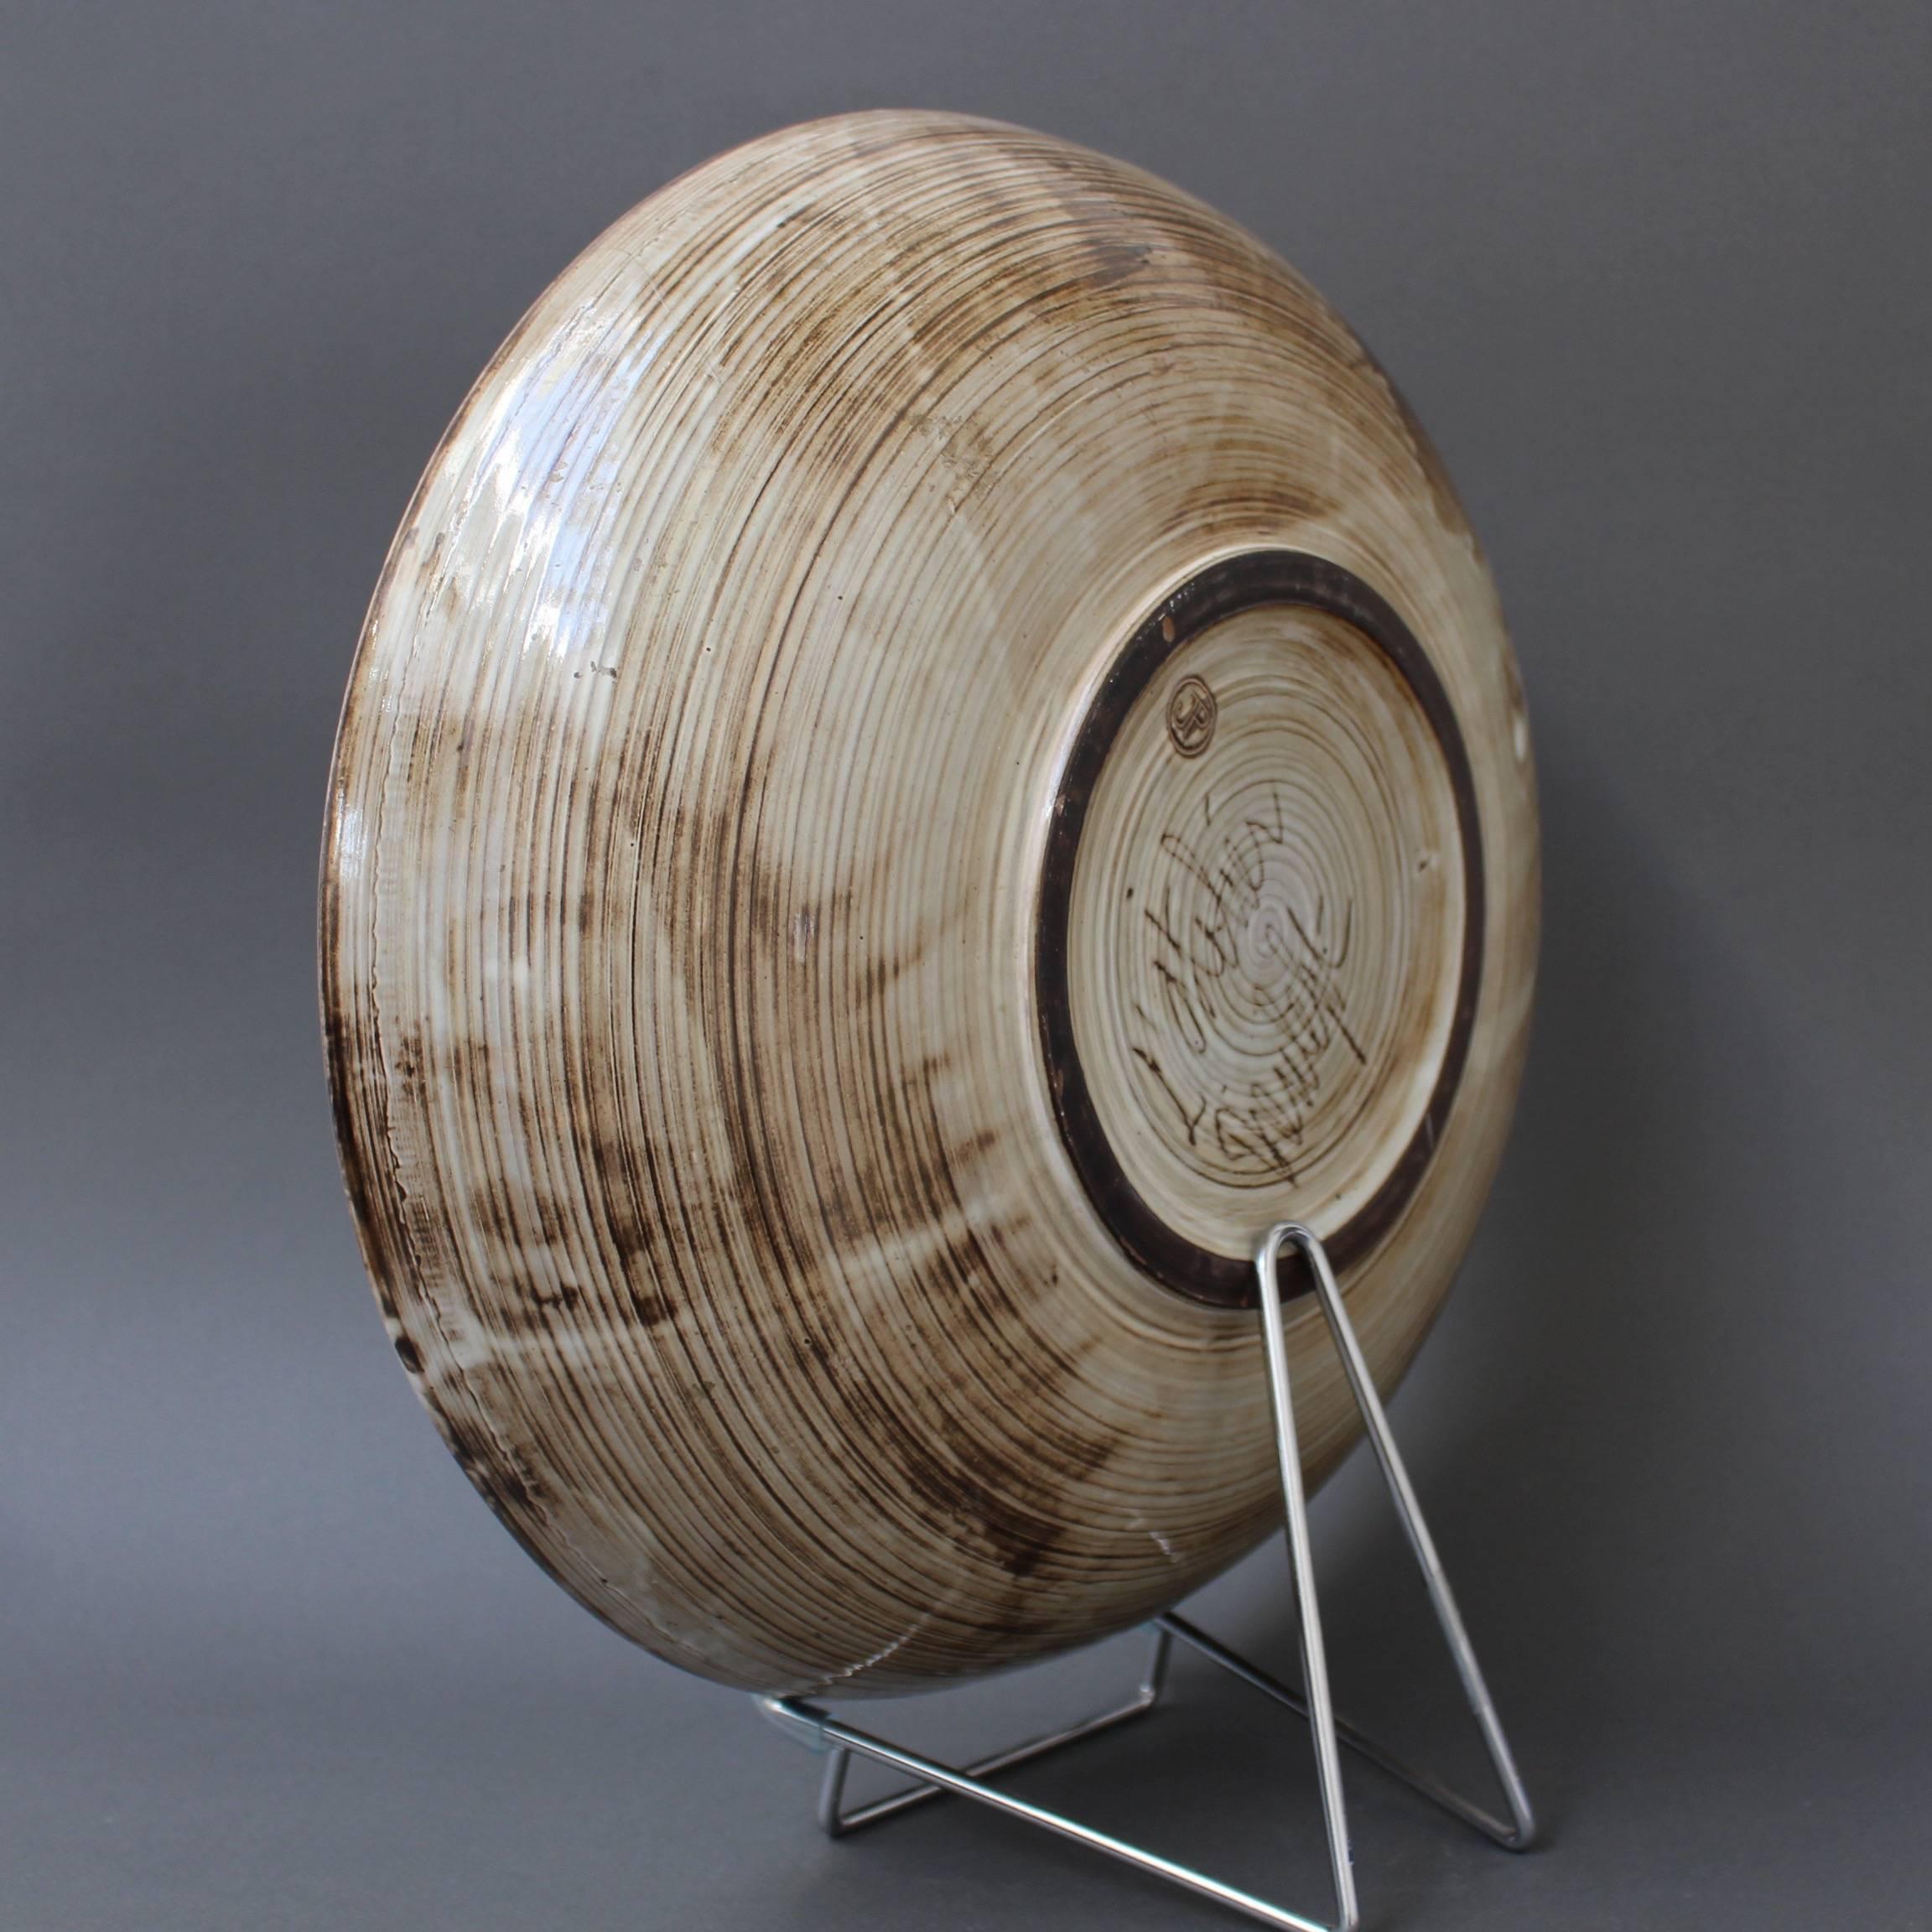 Glazed Large Decorative Bowl with Sunburst Motif by Jacques Pouchain-Atelier Dieulefit